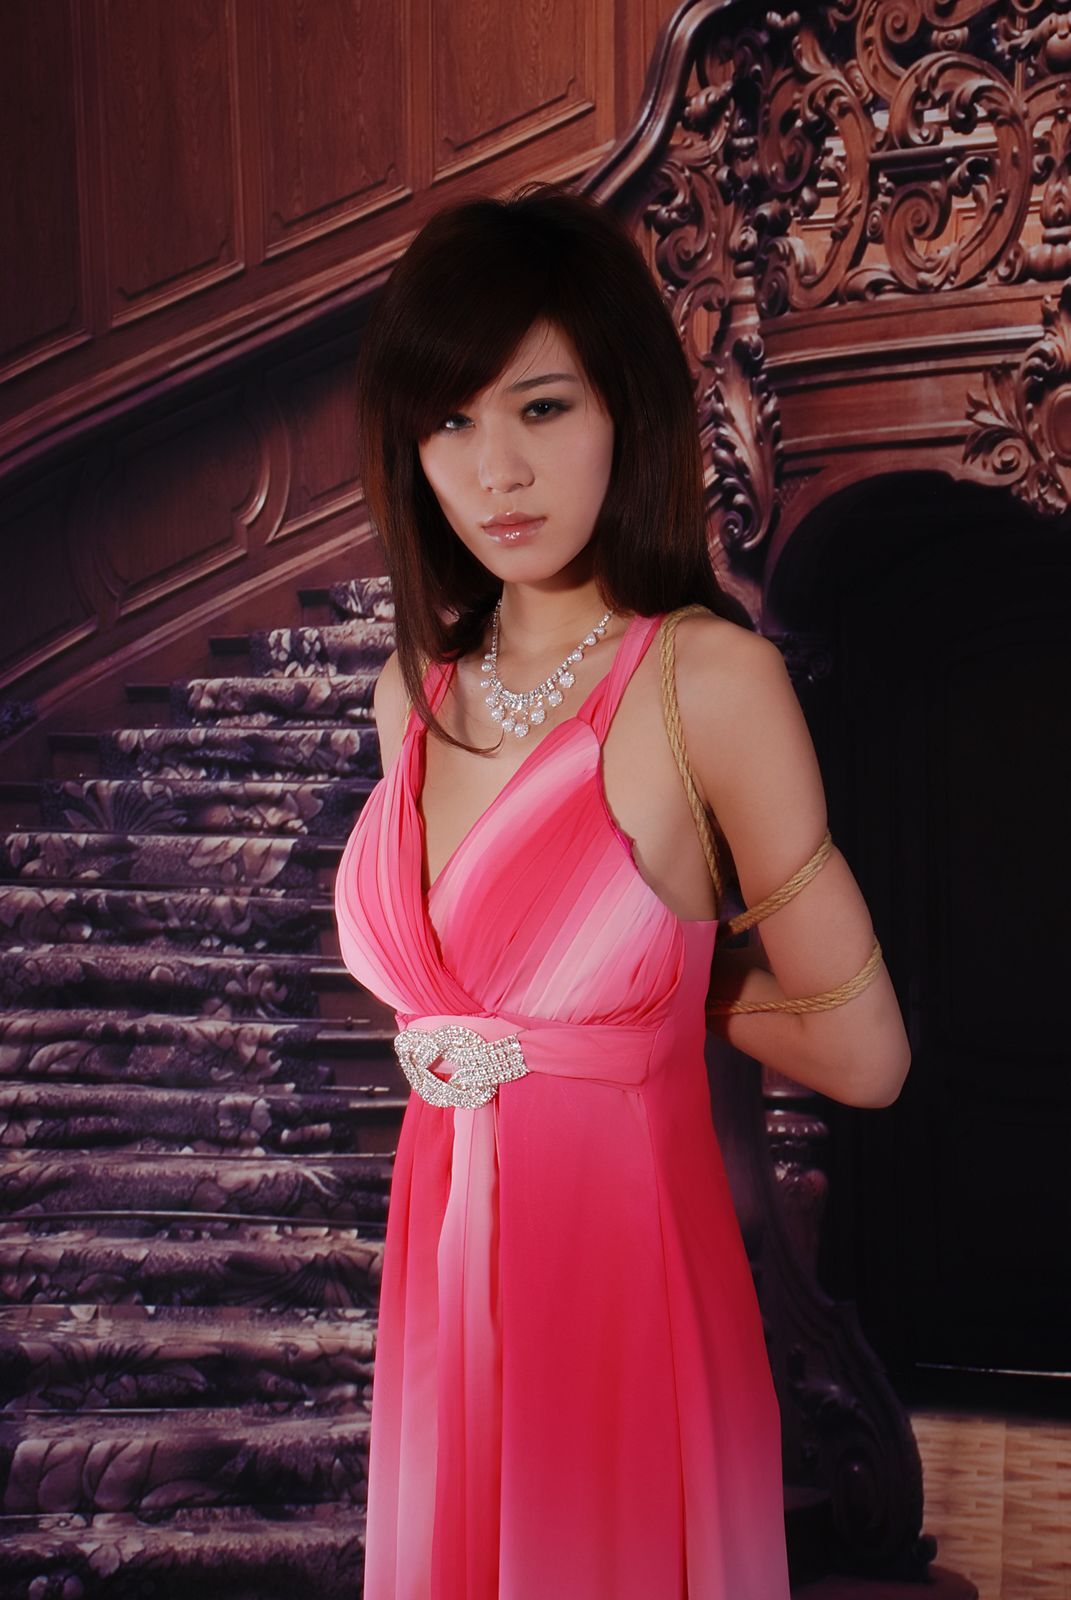 Yuetong: Pink enchantress